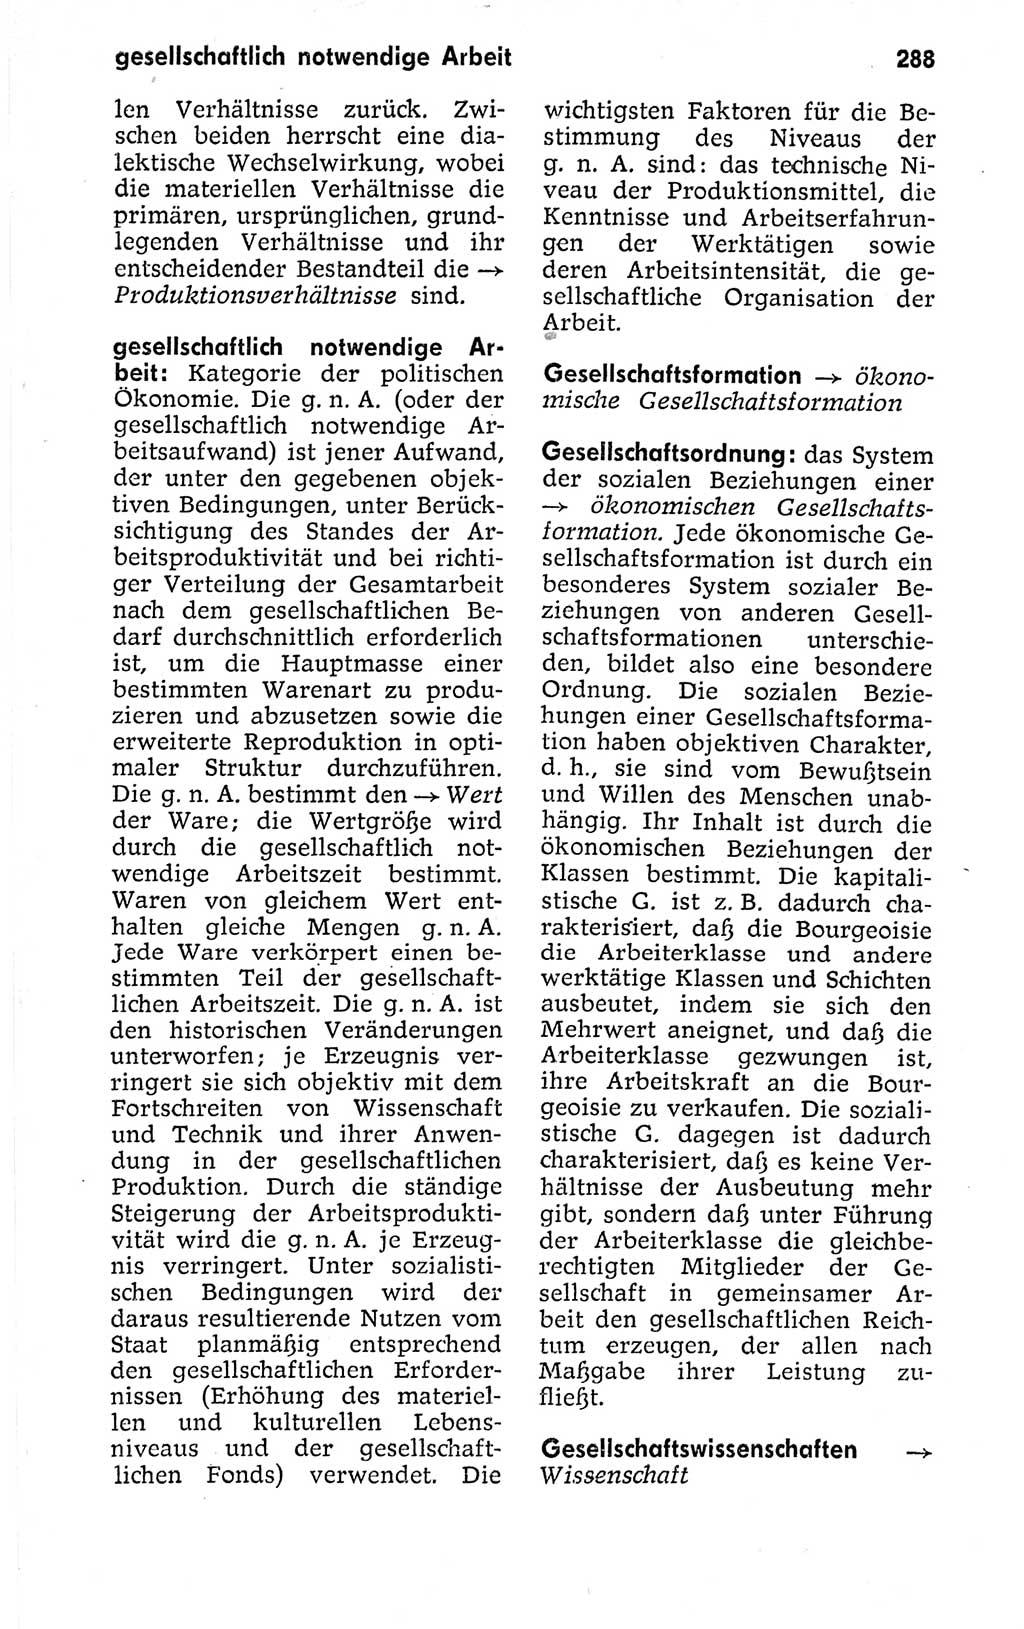 Kleines politisches Wörterbuch [Deutsche Demokratische Republik (DDR)] 1973, Seite 288 (Kl. pol. Wb. DDR 1973, S. 288)